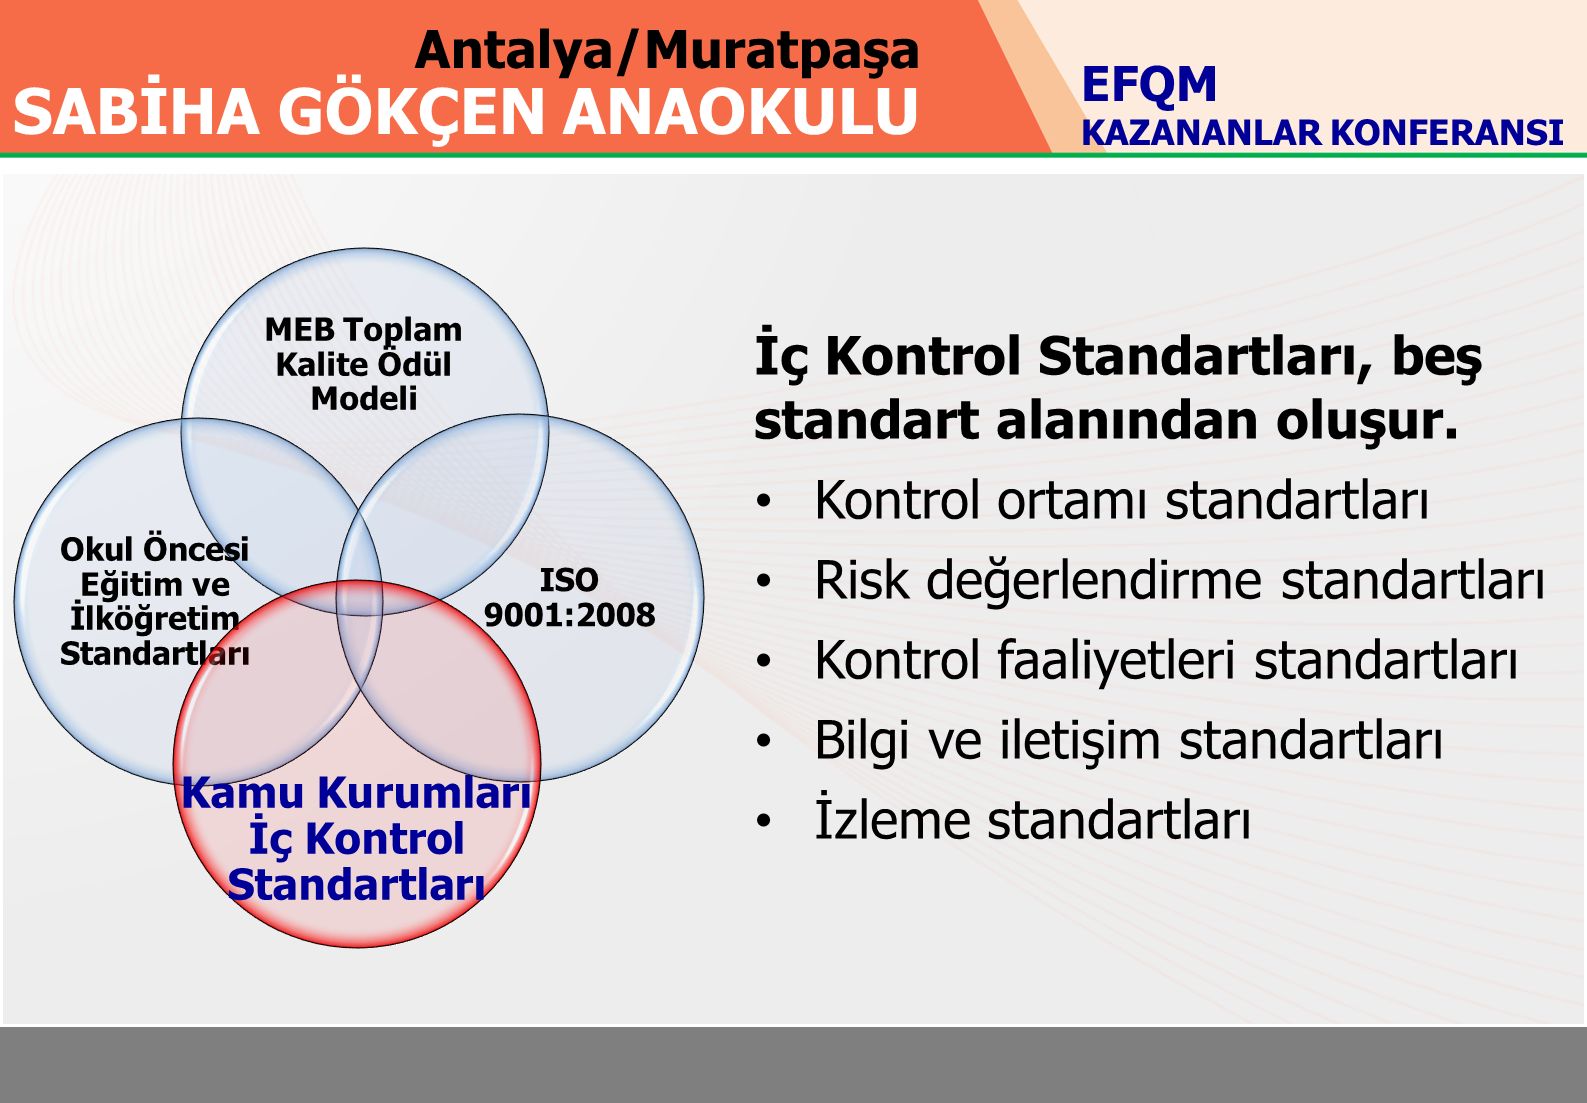 Antalya/Muratpaşa SABİHA GÖKÇEN ANAOKULU MEB Toplam Kalite Ödül Modeli Okul Öncesi Eğitim ve İlköğretim Standartları ISO 9001:2008 Kamu Kurumları İç Kontrol Standartları İç Kontrol Standartları, beş standart alanından oluşur.